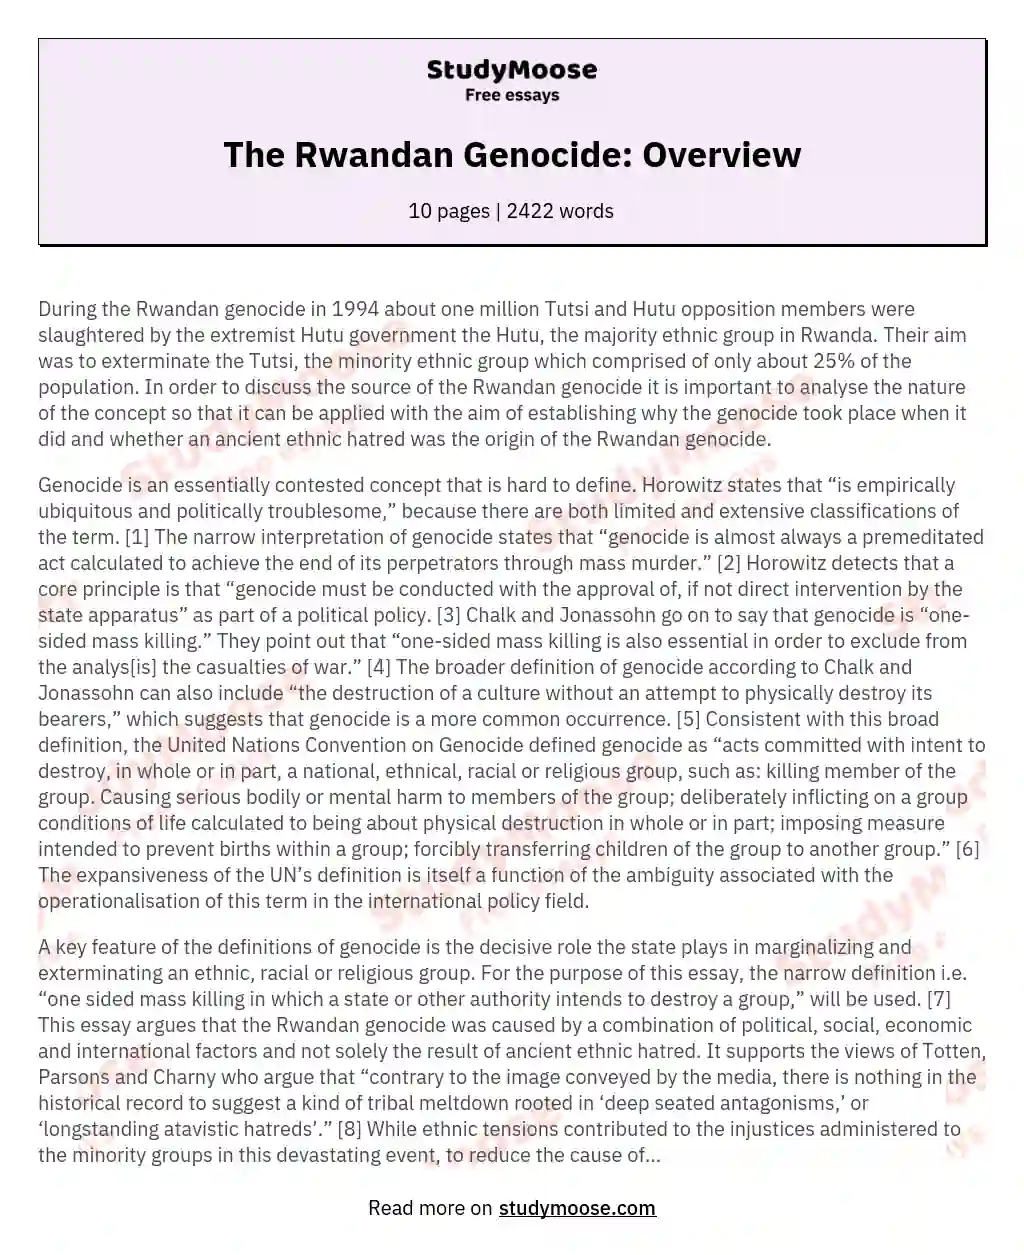 The Rwandan Genocide: Overview essay